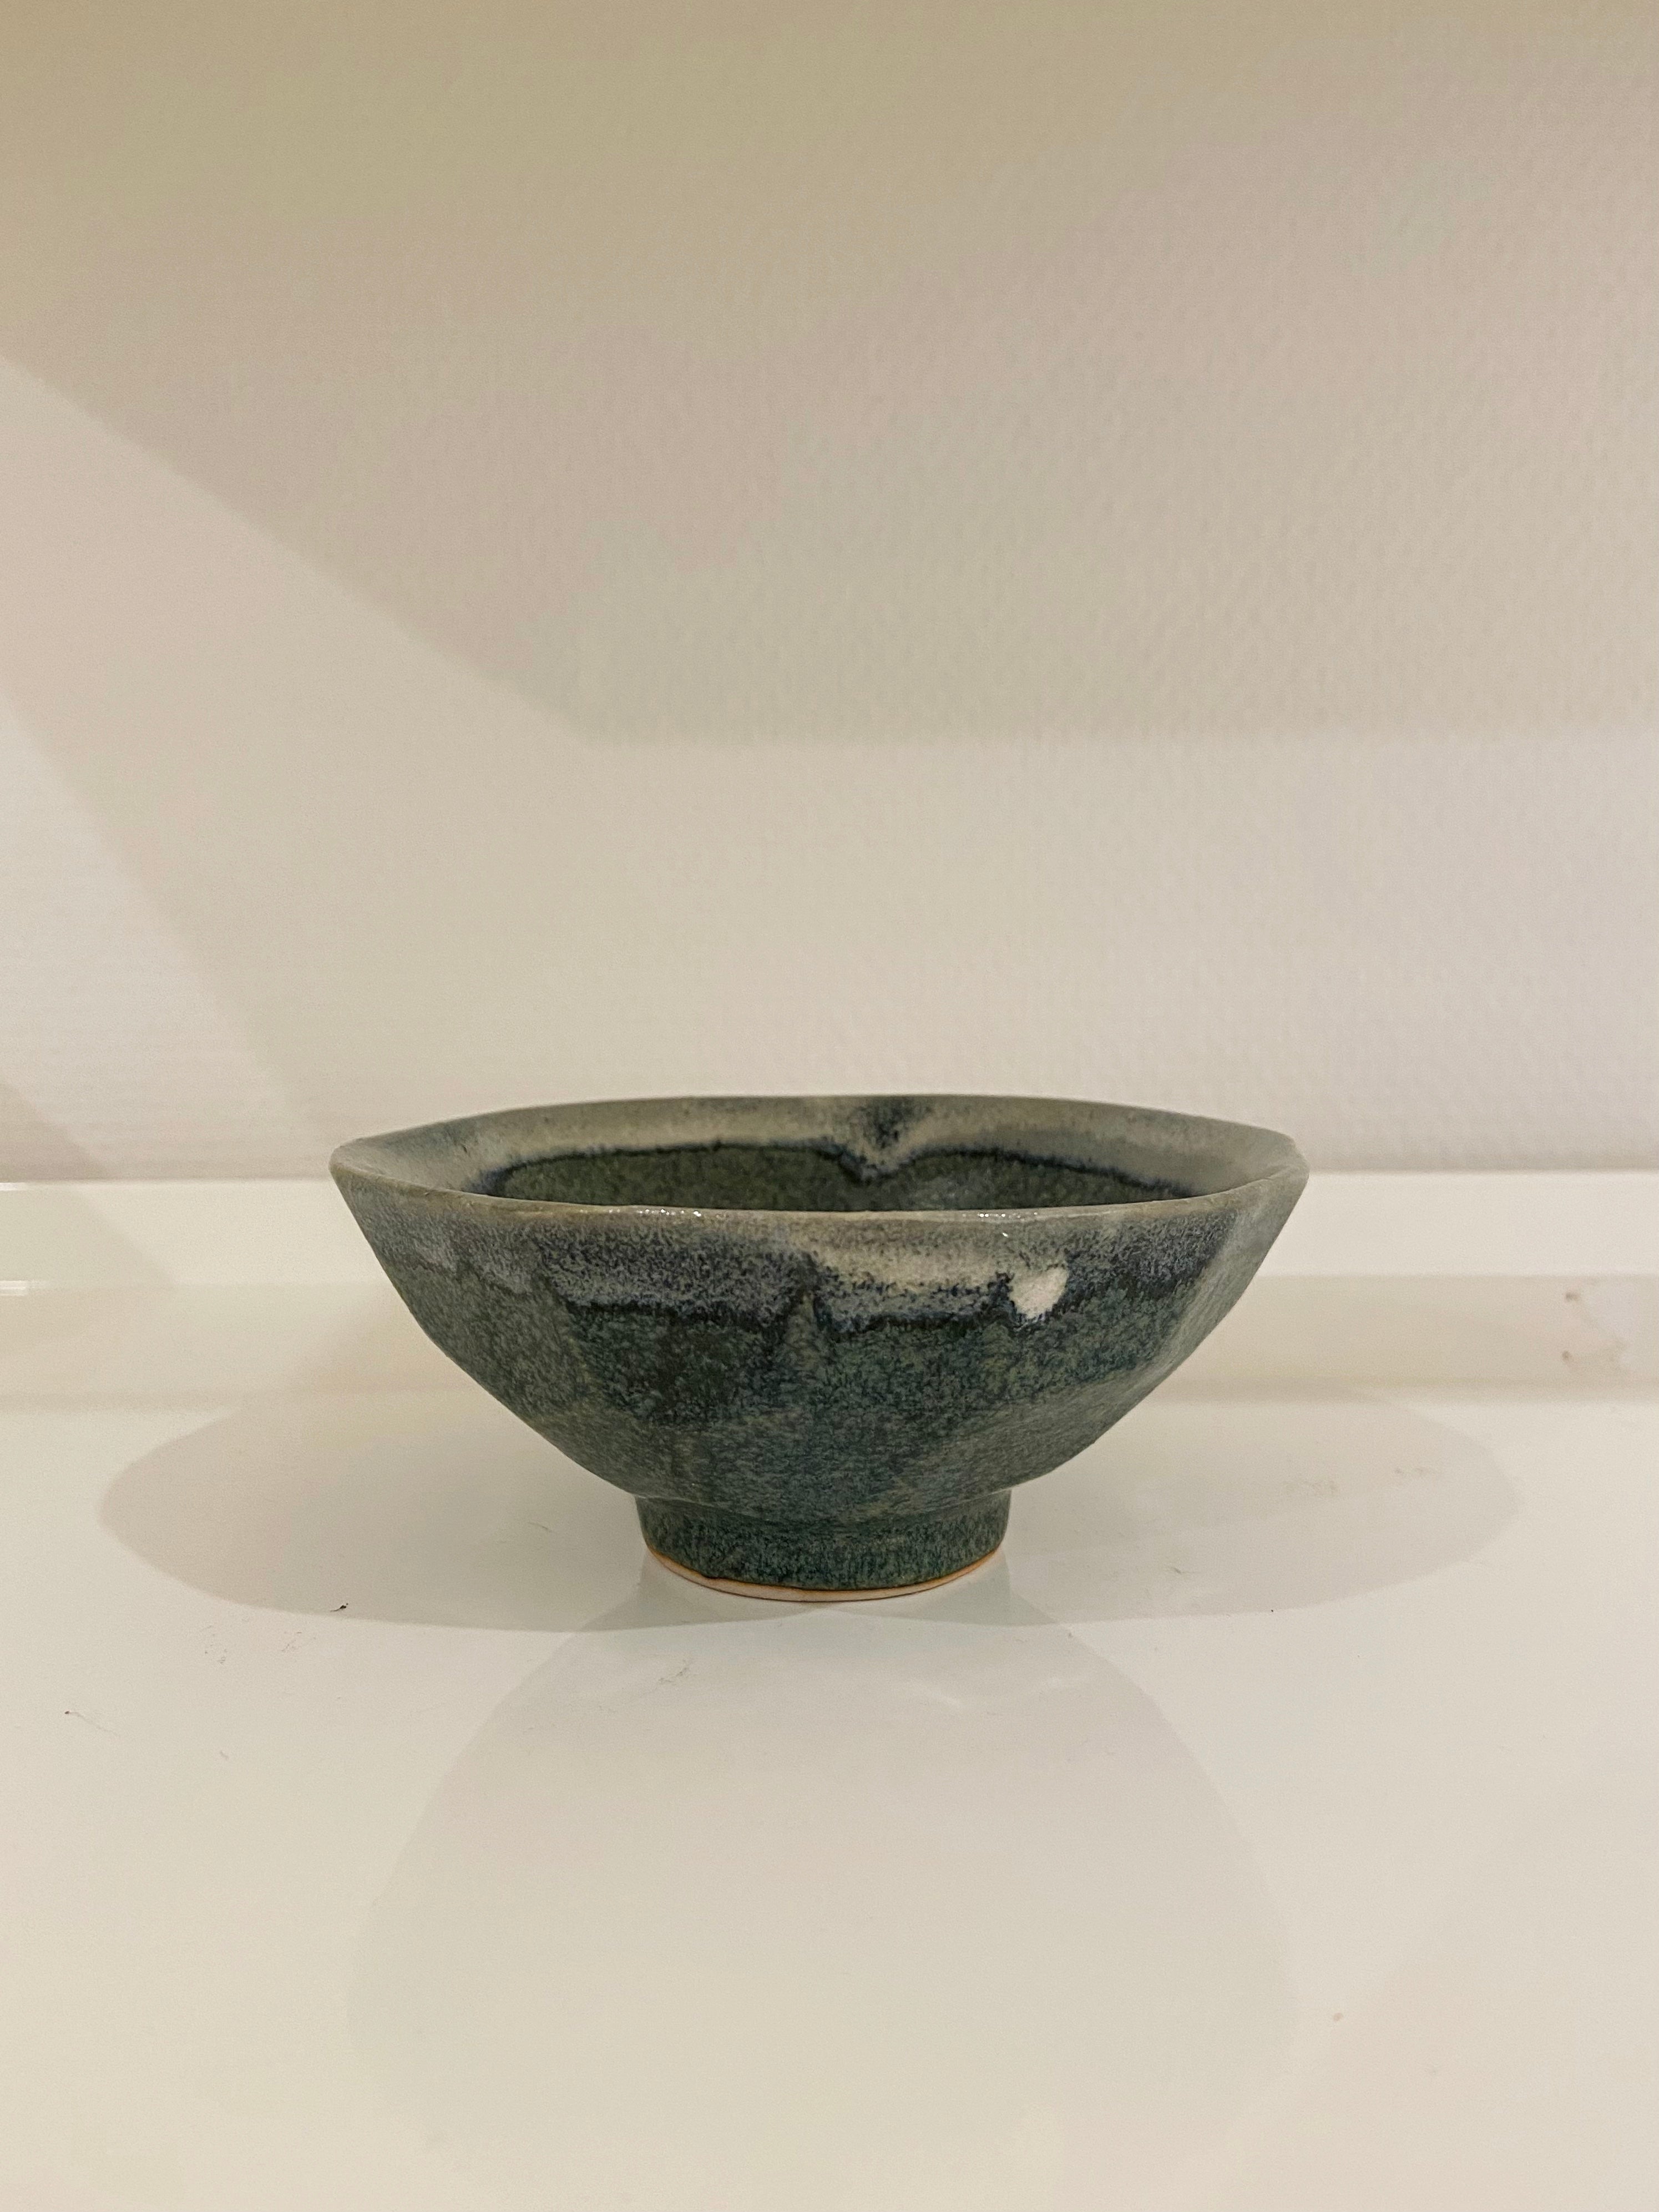 Angular bowl with blue/grey glaze